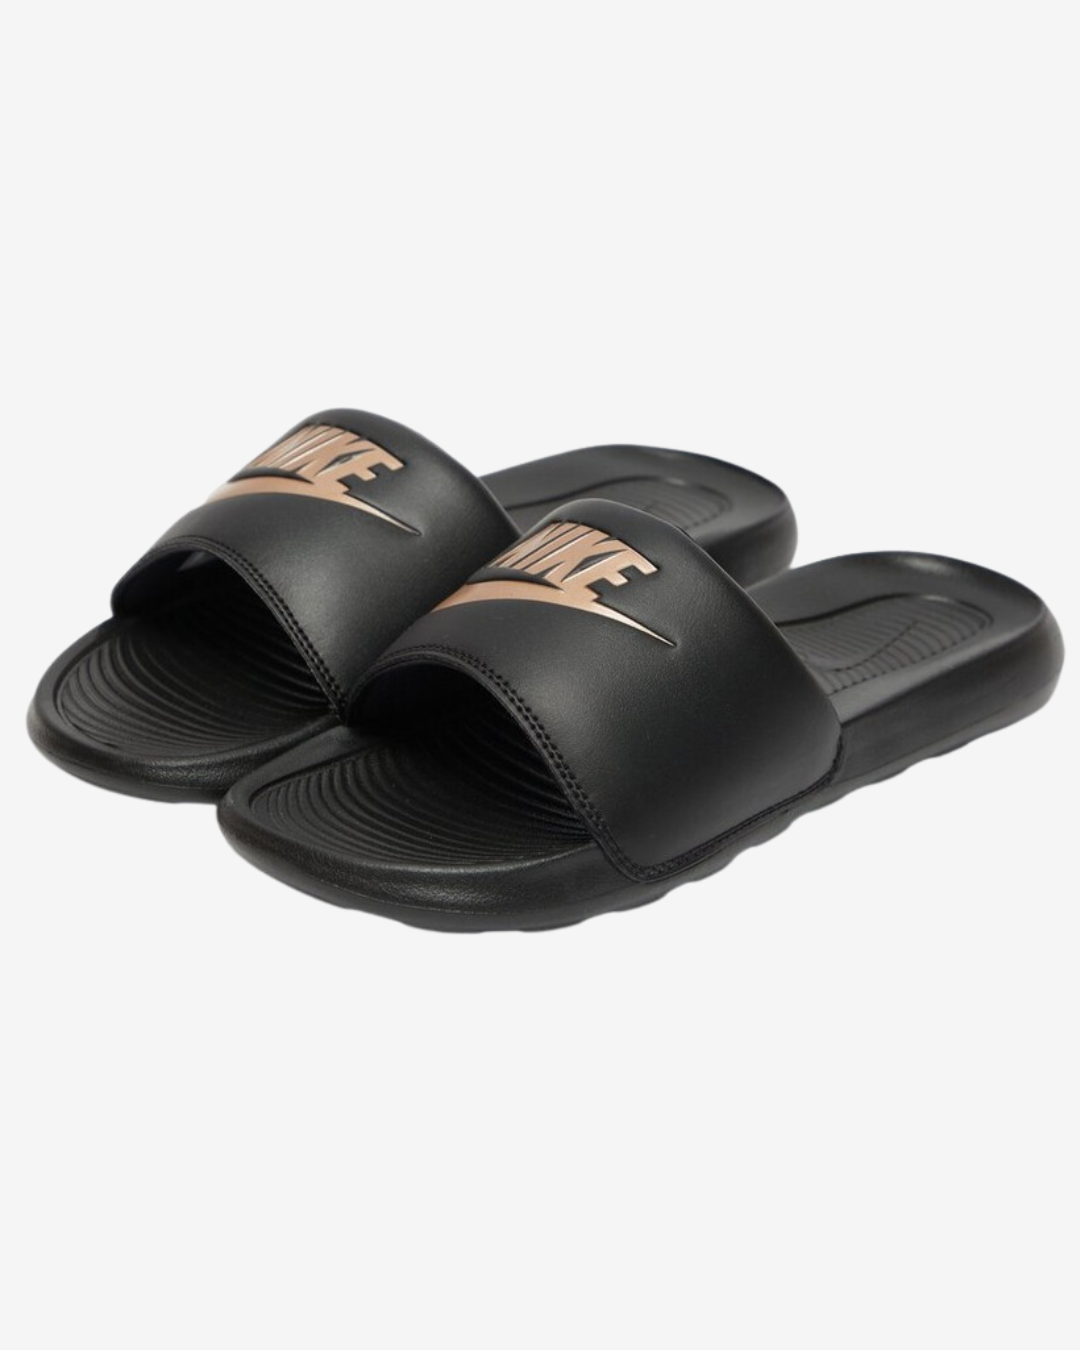 Billede af Nike Victori slippers - Sort / Bronze - Str. 44.5 - Modish.dk